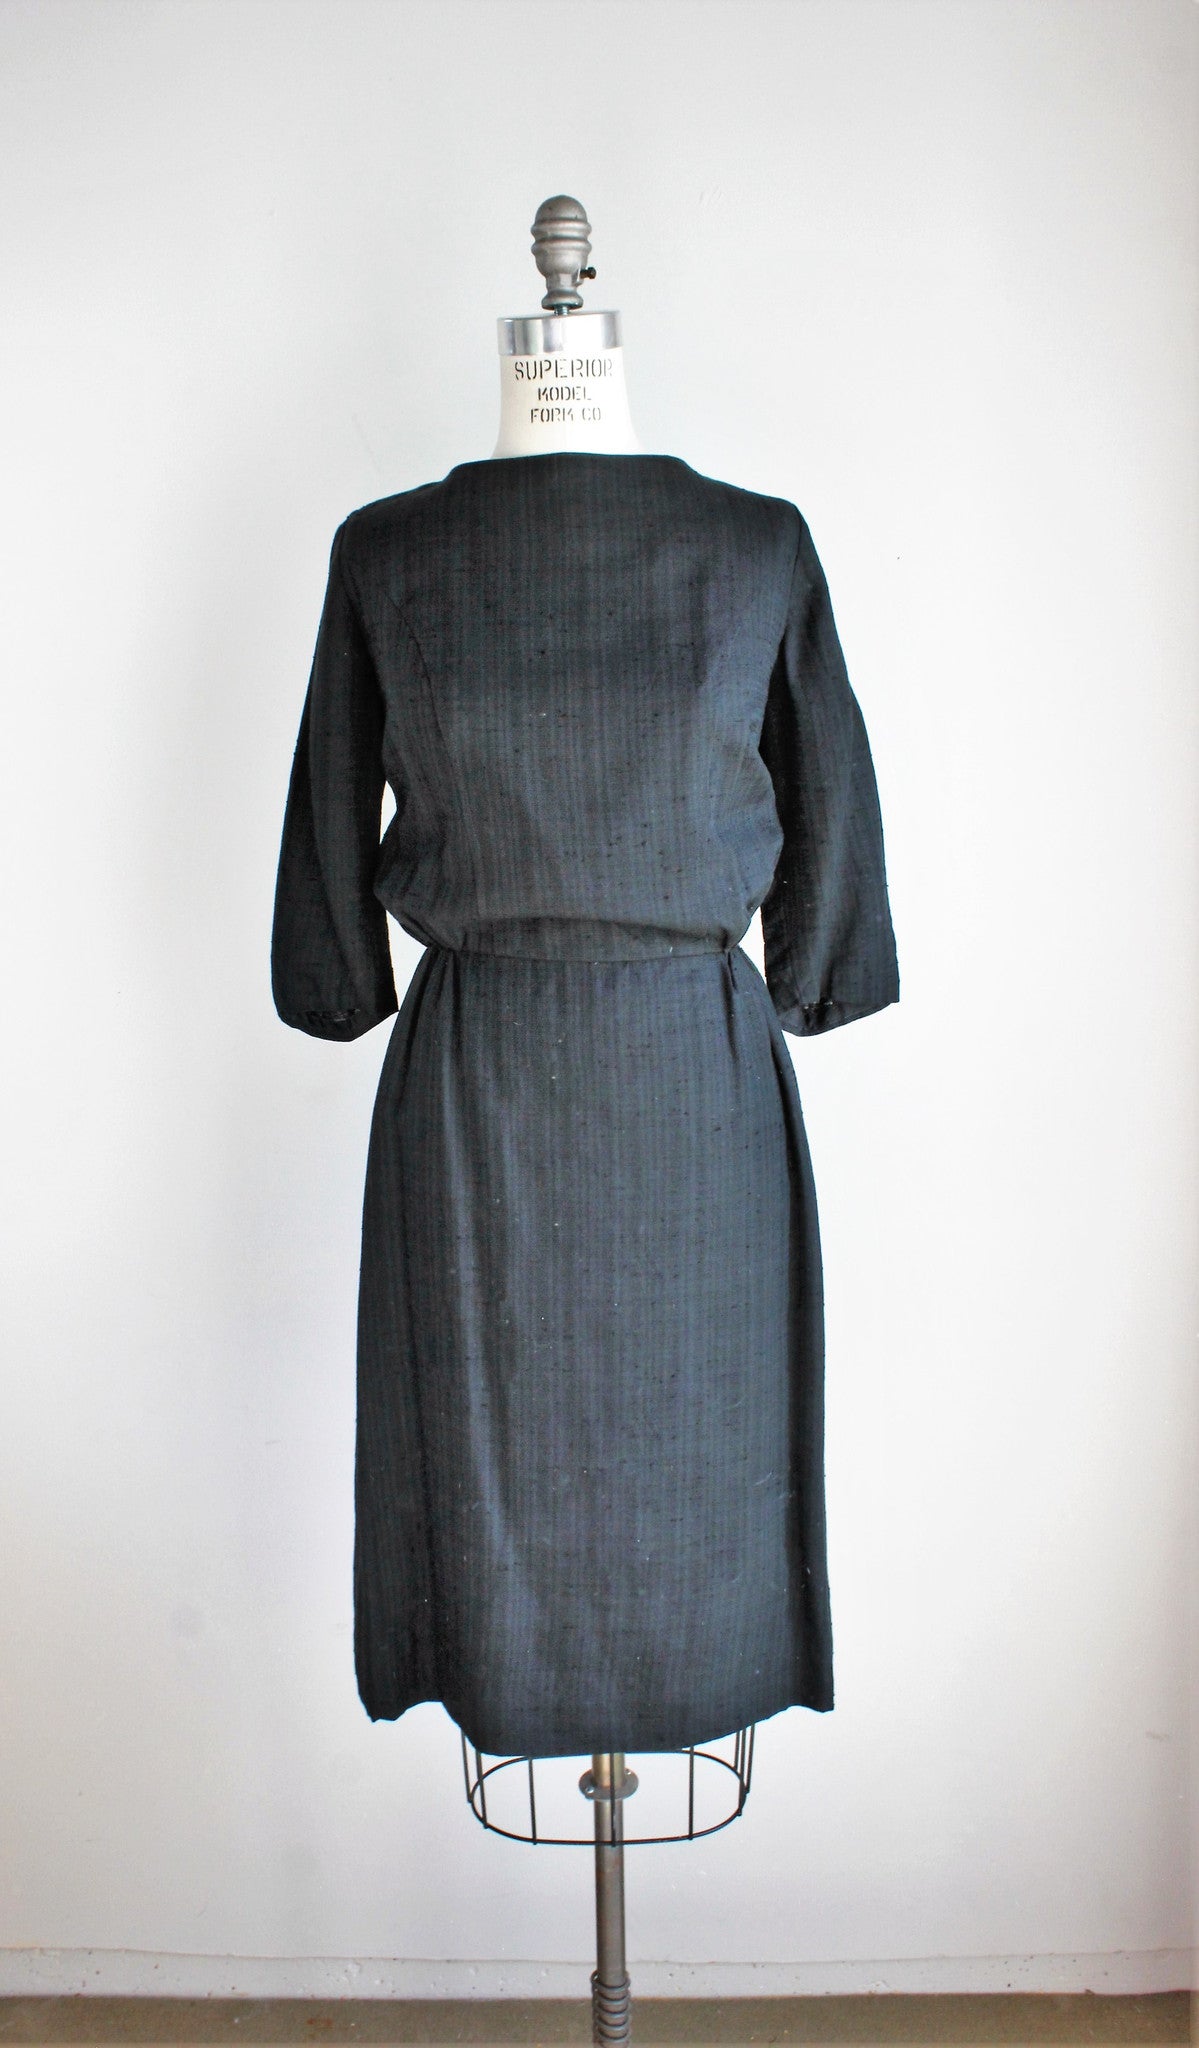 Vintage 1950s Wiggle Dress, Black Button Back